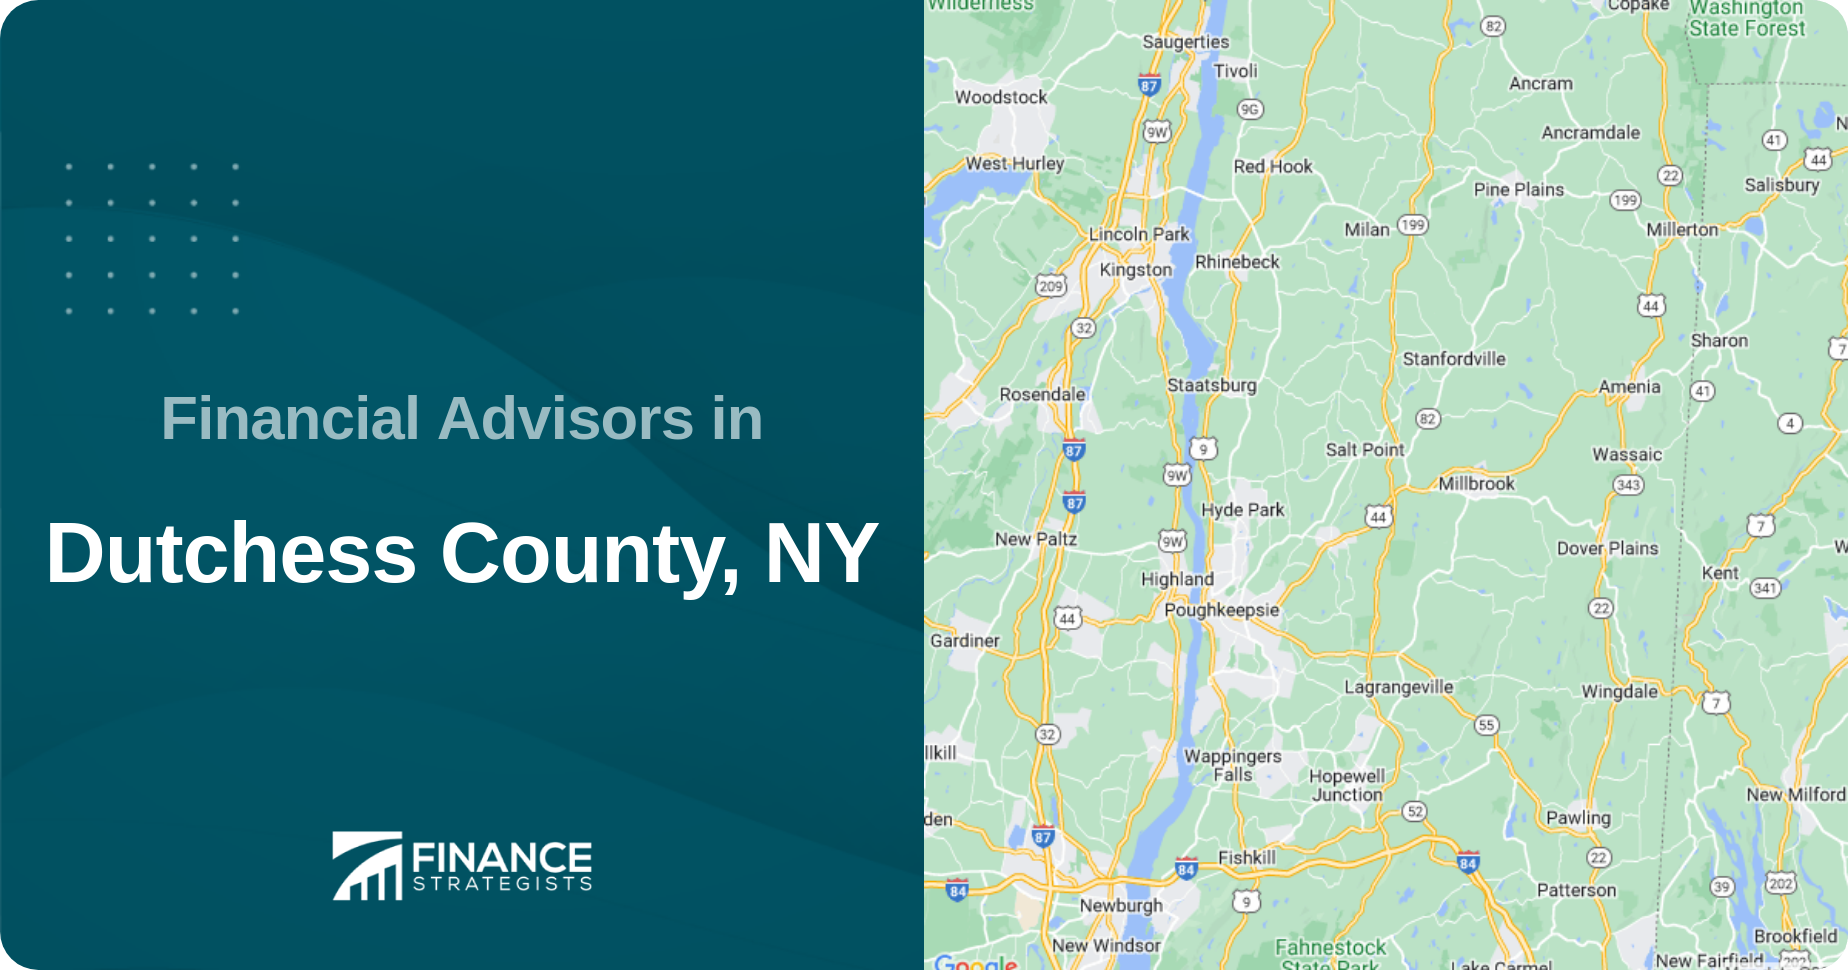 Financial Advisors in Dutchess County, NY